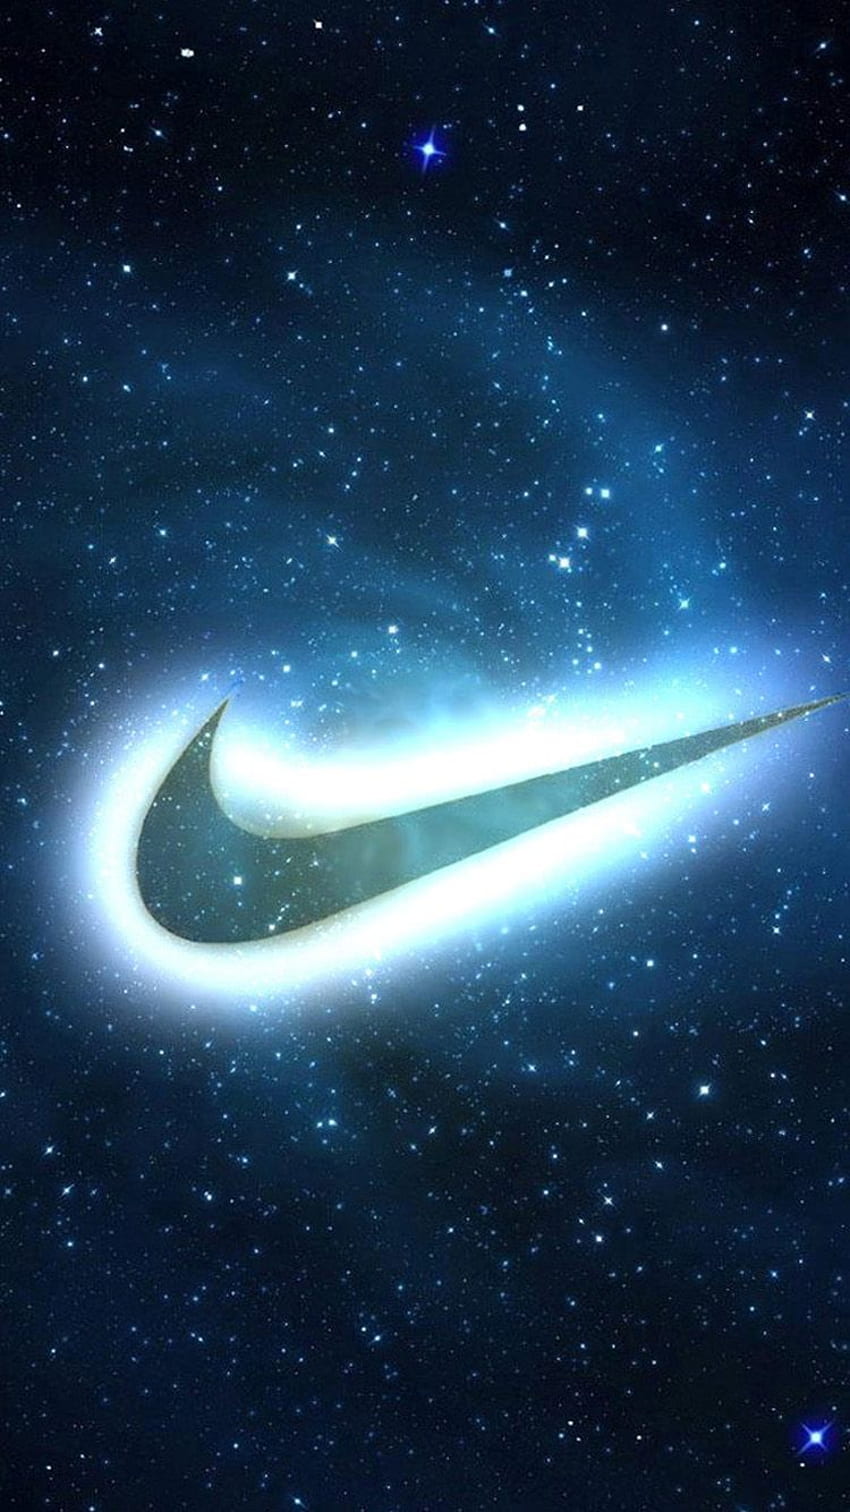 Biểu tượng Nike nổi tiếng đã trở thành biểu tượng của sự cuồng nhiệt và năng lượng. Hãy xem hình ảnh này để khám phá thêm về những giá trị tuyệt vời mà Nike đại diện.